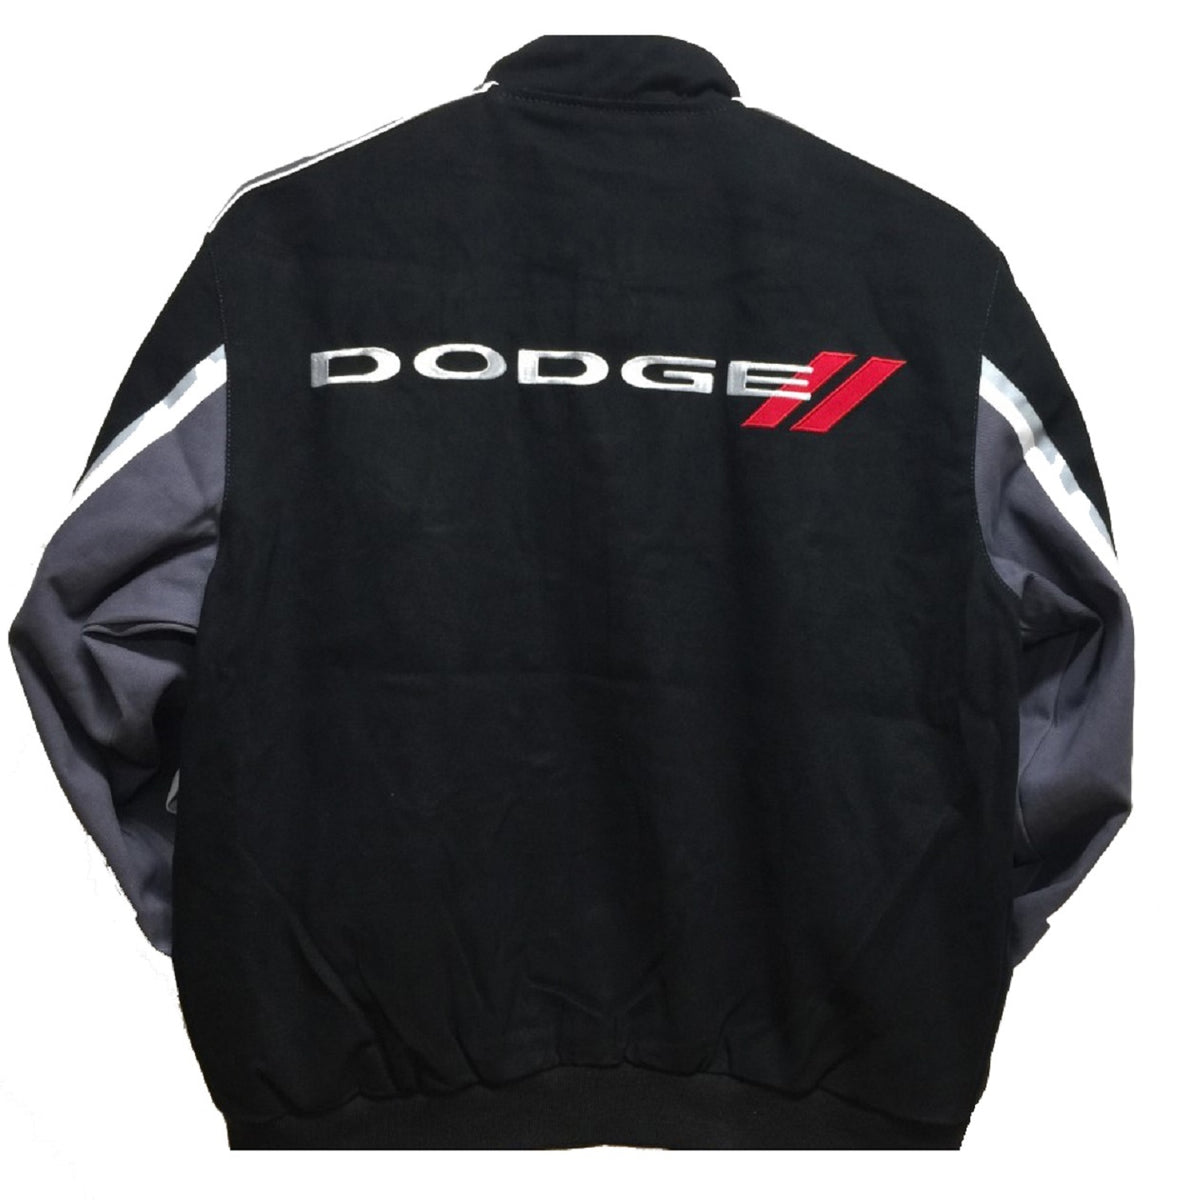 2019 Dodge Racing Twill Jacket - Black | J.H. Sports Jackets